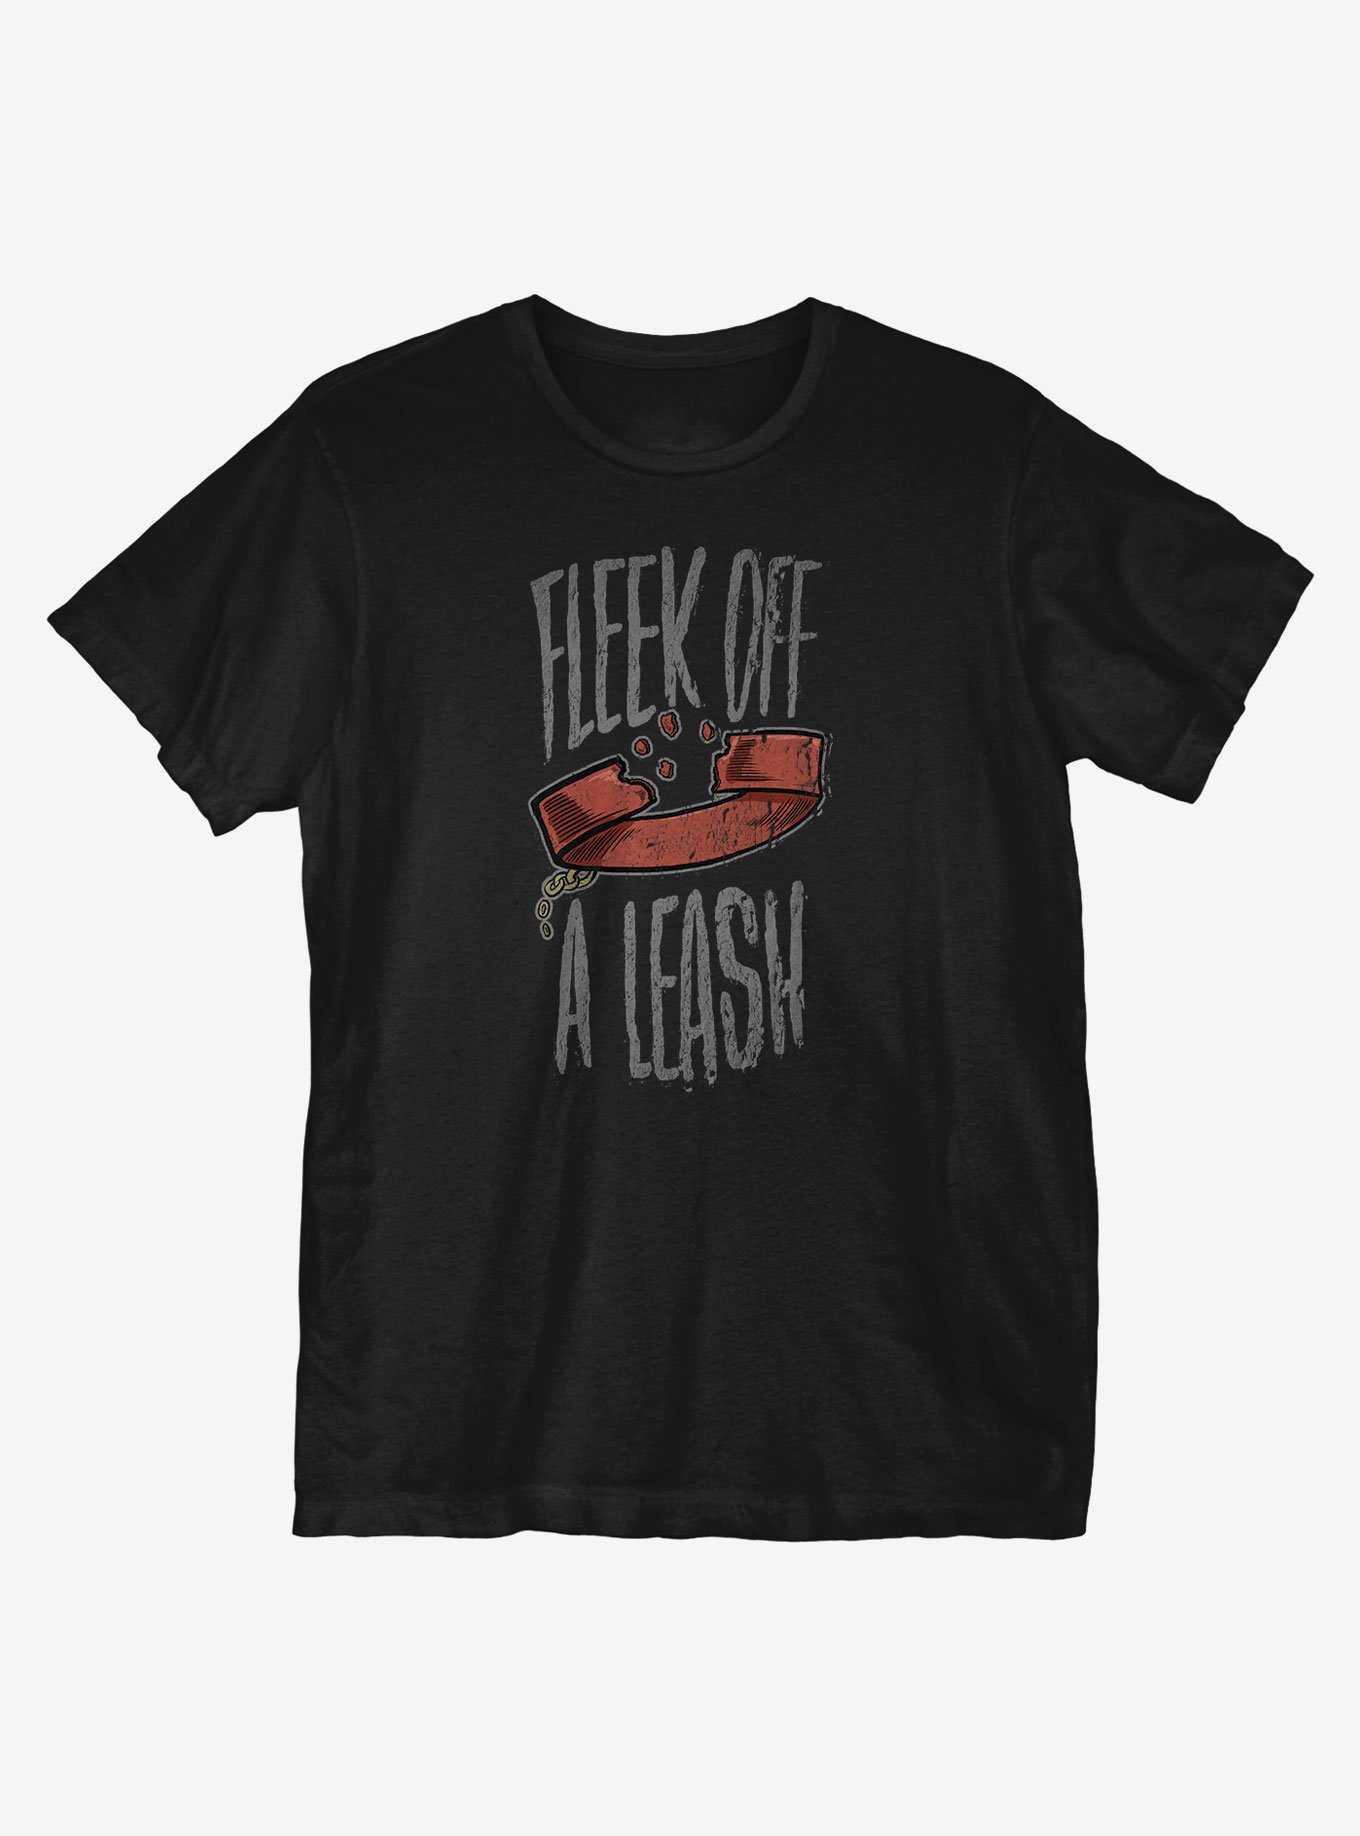 Fleek Off A Leash T-Shirt, , hi-res